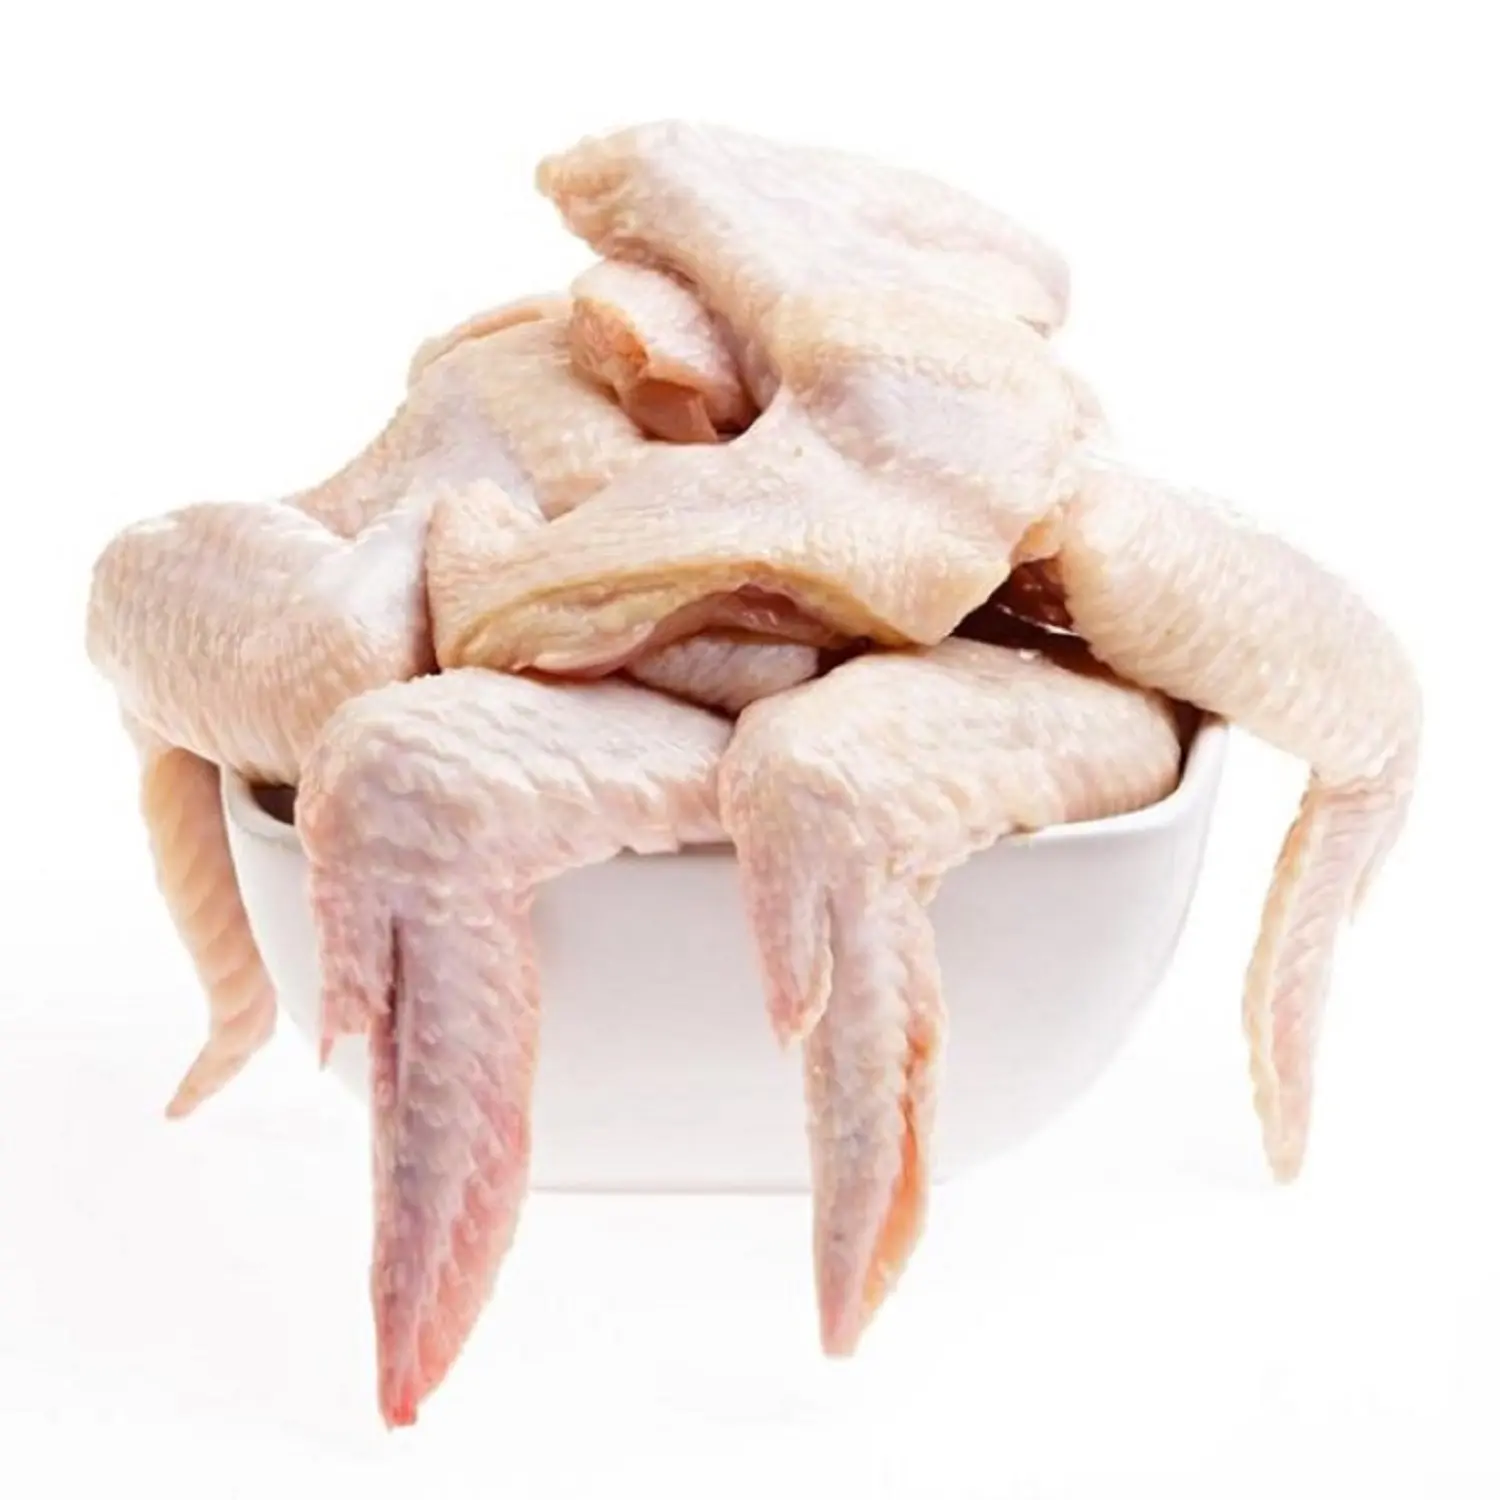 Dondurulmuş tavuk orta eklem kanatları/3 eklem tavuk kanatları, tavuk kanadı 2 eklem/dondurulmuş tavuk kanadı ucu